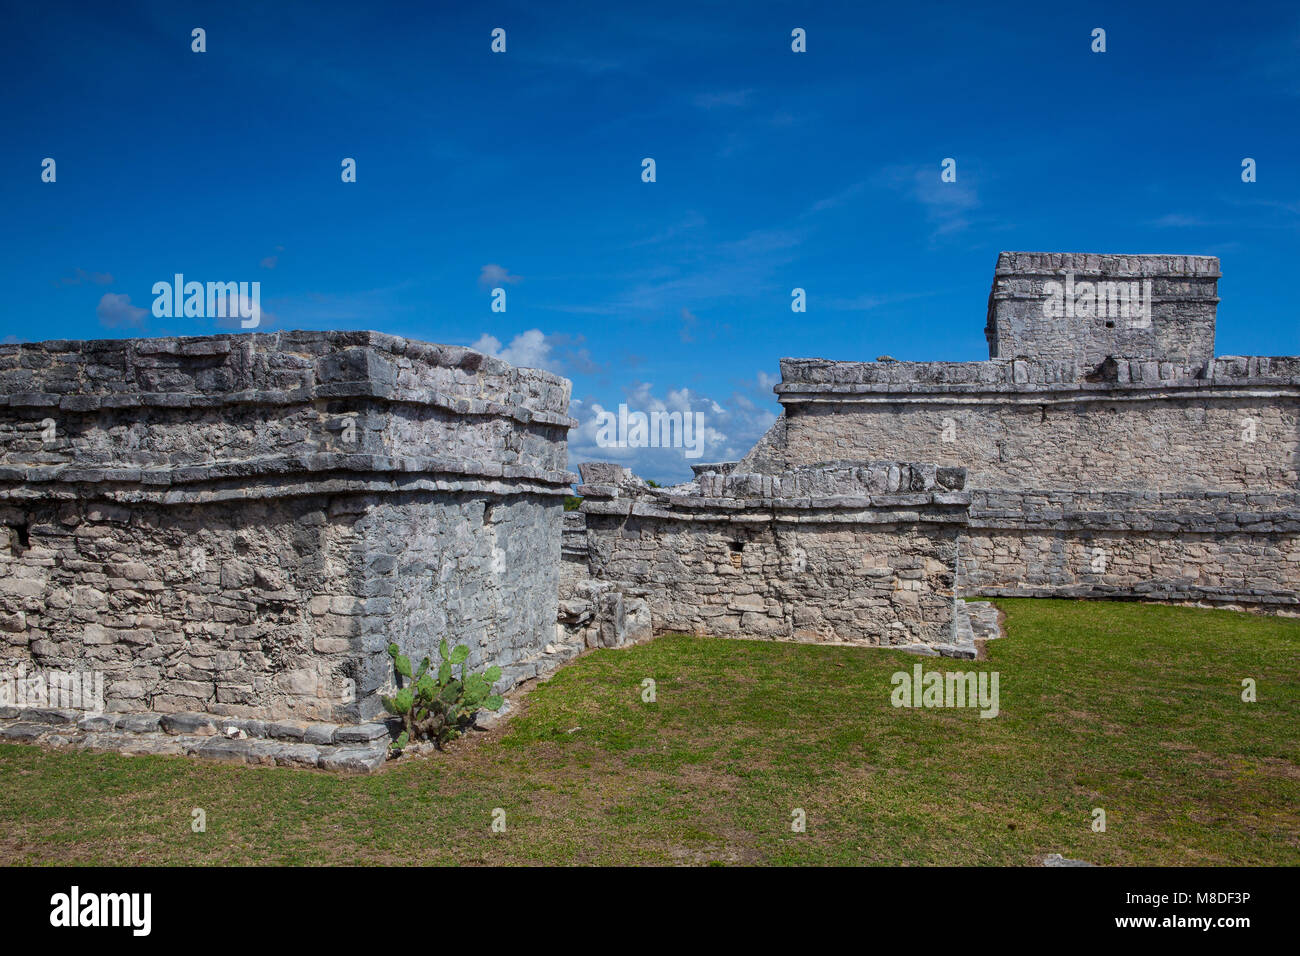 Majestätische Ruinen in Tulum. Tulum ist ein Ferienort auf Mexicos karibischen Küste. Aus dem 13. Jahrhundert, ummauerten Maya archäologische Stätte Tulum National Park o Stockfoto